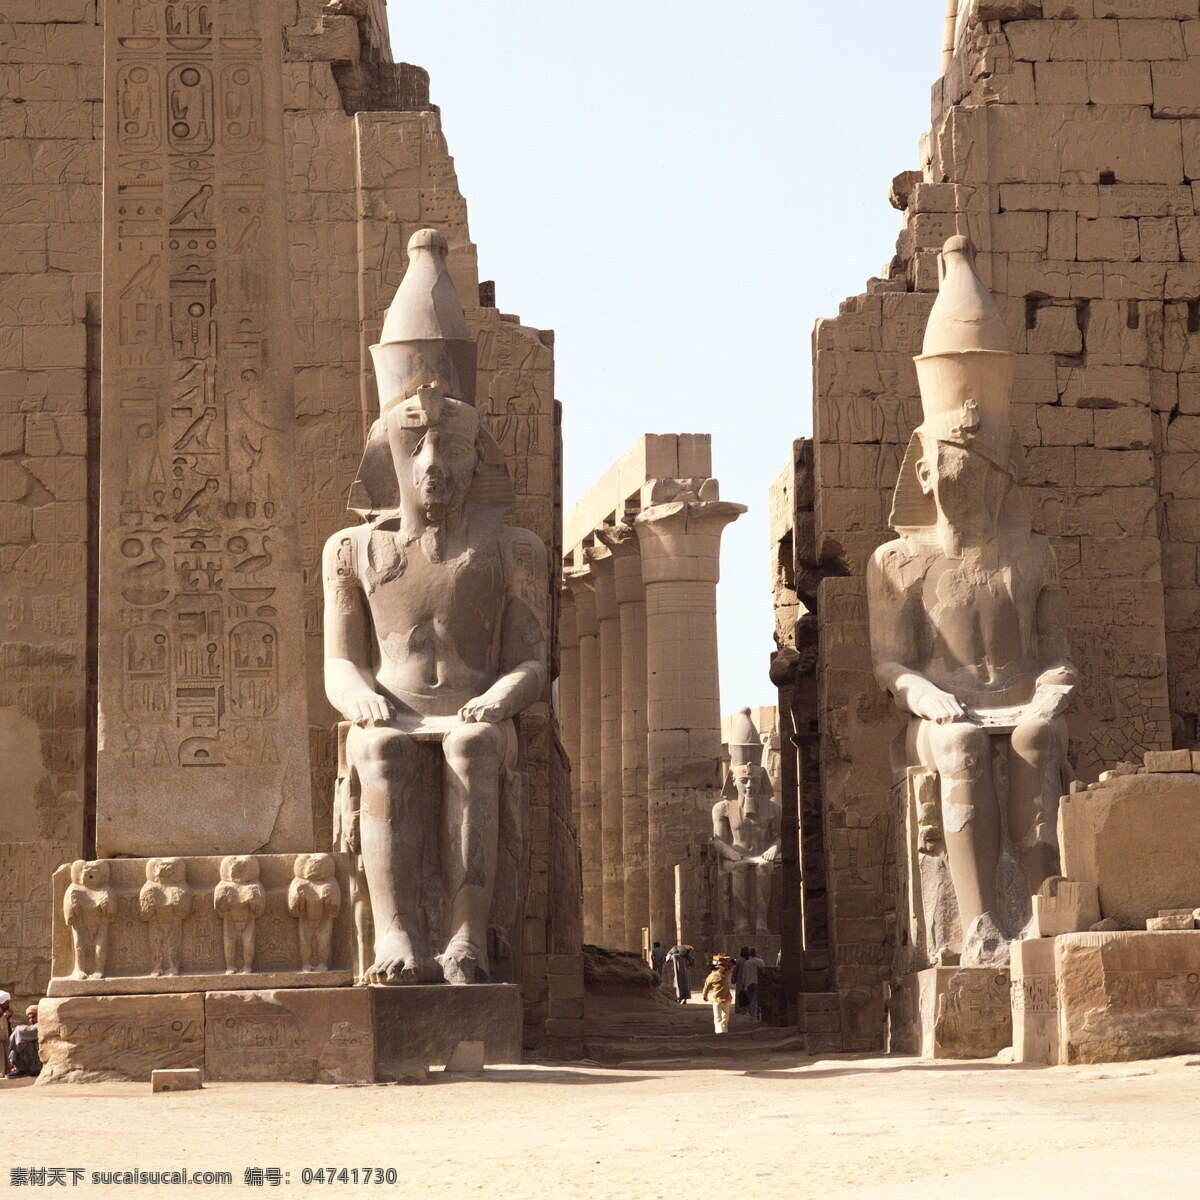 古埃及 欧洲遗迹 石头山 石头 自然景观 风景名胜 欧洲古迹 欧式 欧洲 旅游 建筑景观 埃及 金字塔 国外旅游 旅游摄影 建筑摄影